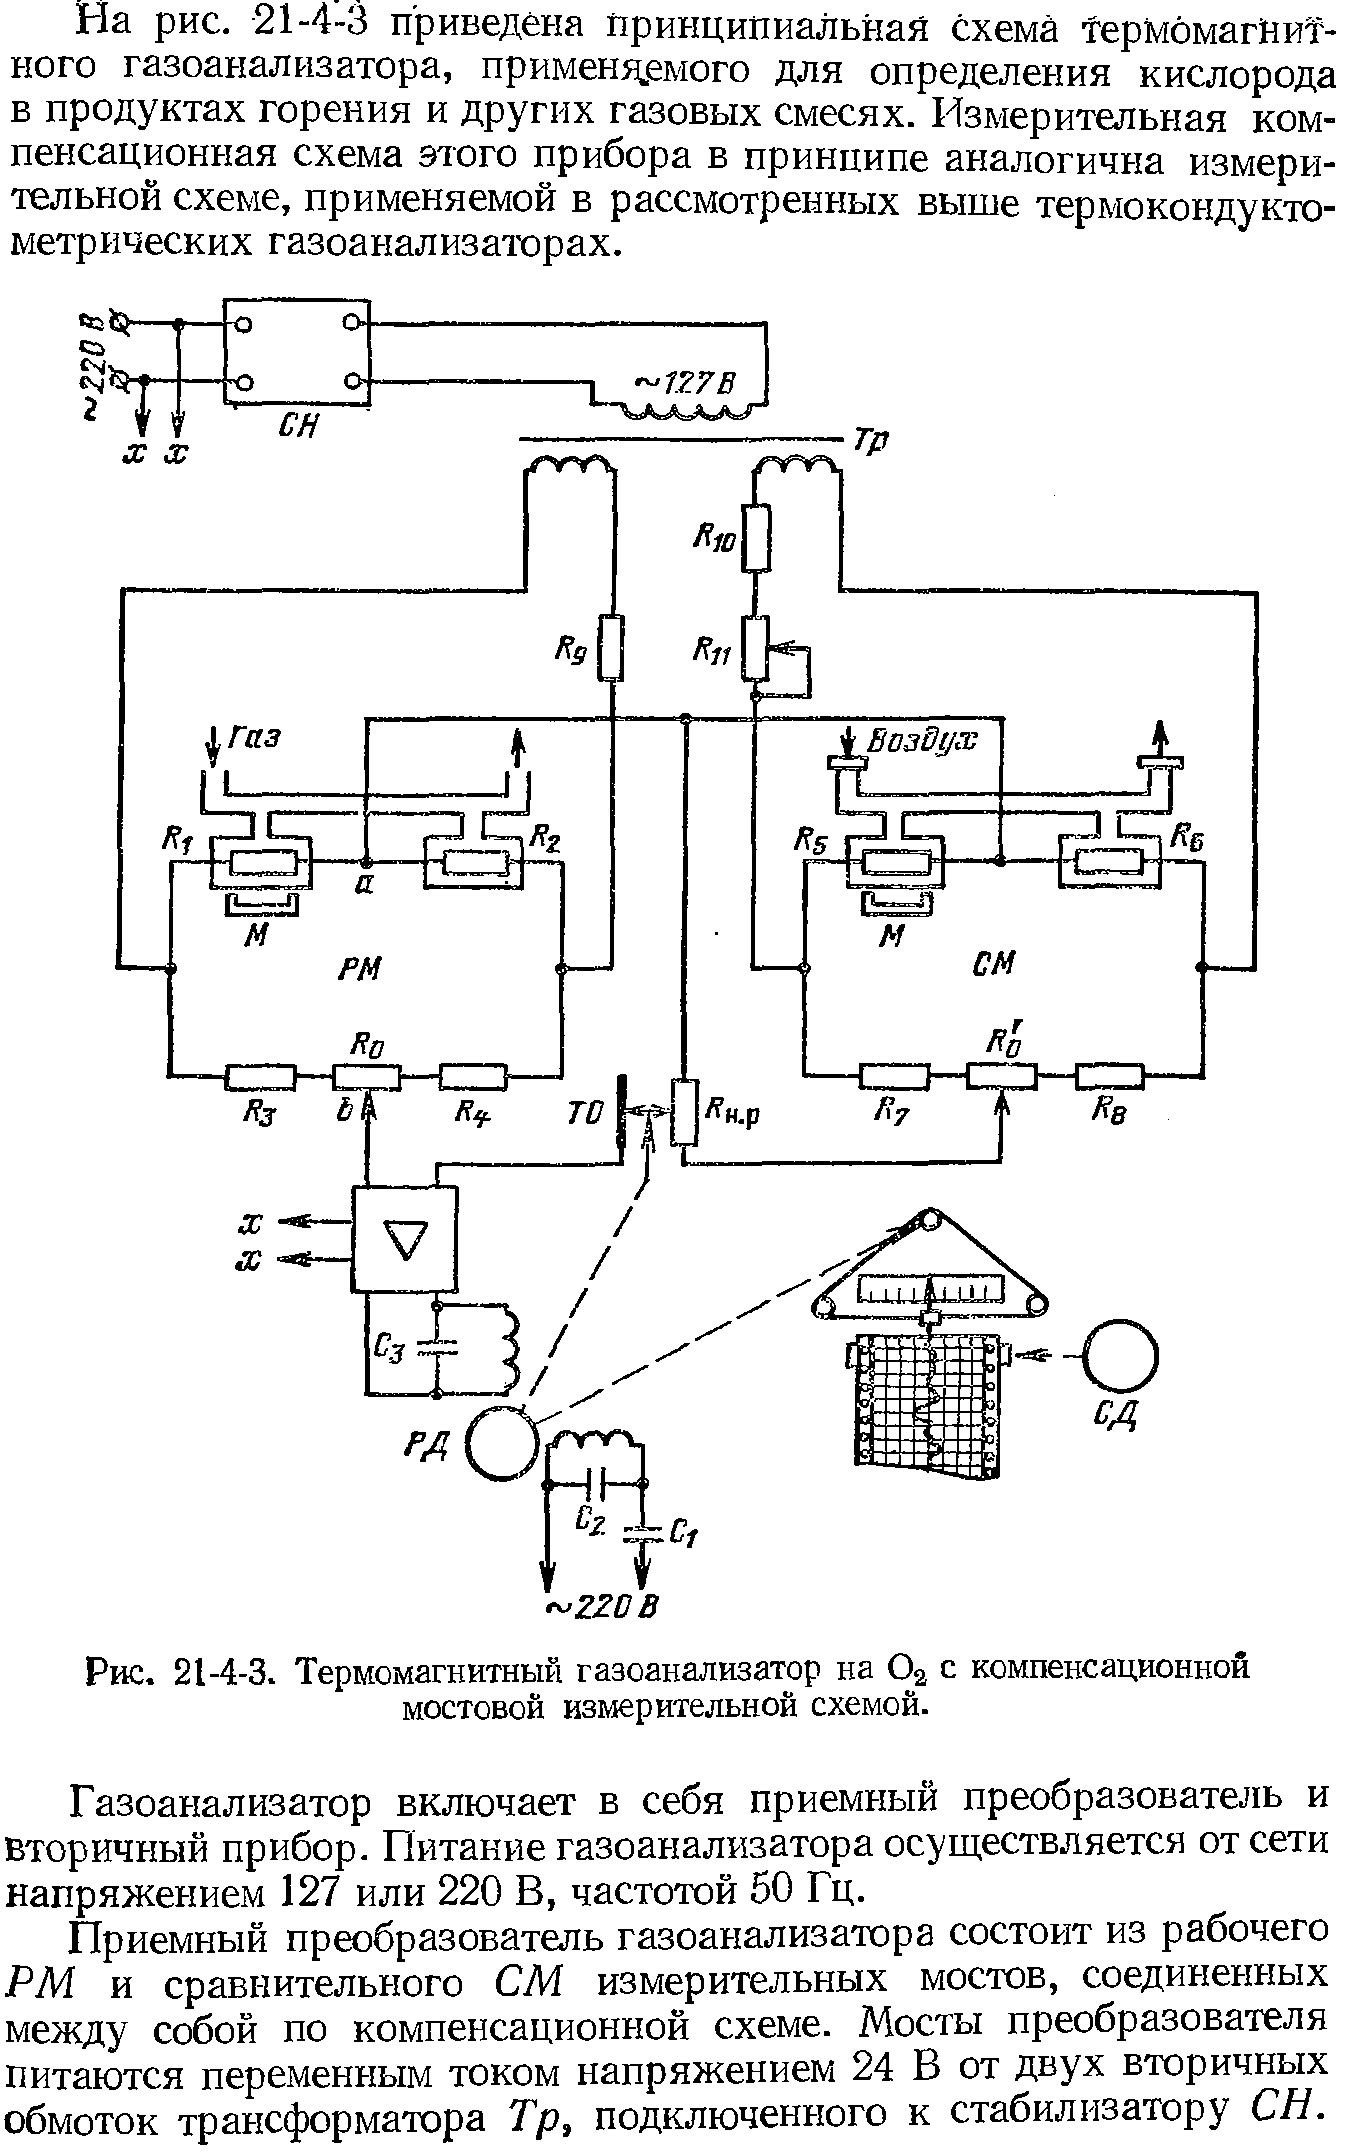 Рис. 21-4-3. Термомагнитный газоанализатор на Оа с компенсационной мостовой измерительной схемой.
